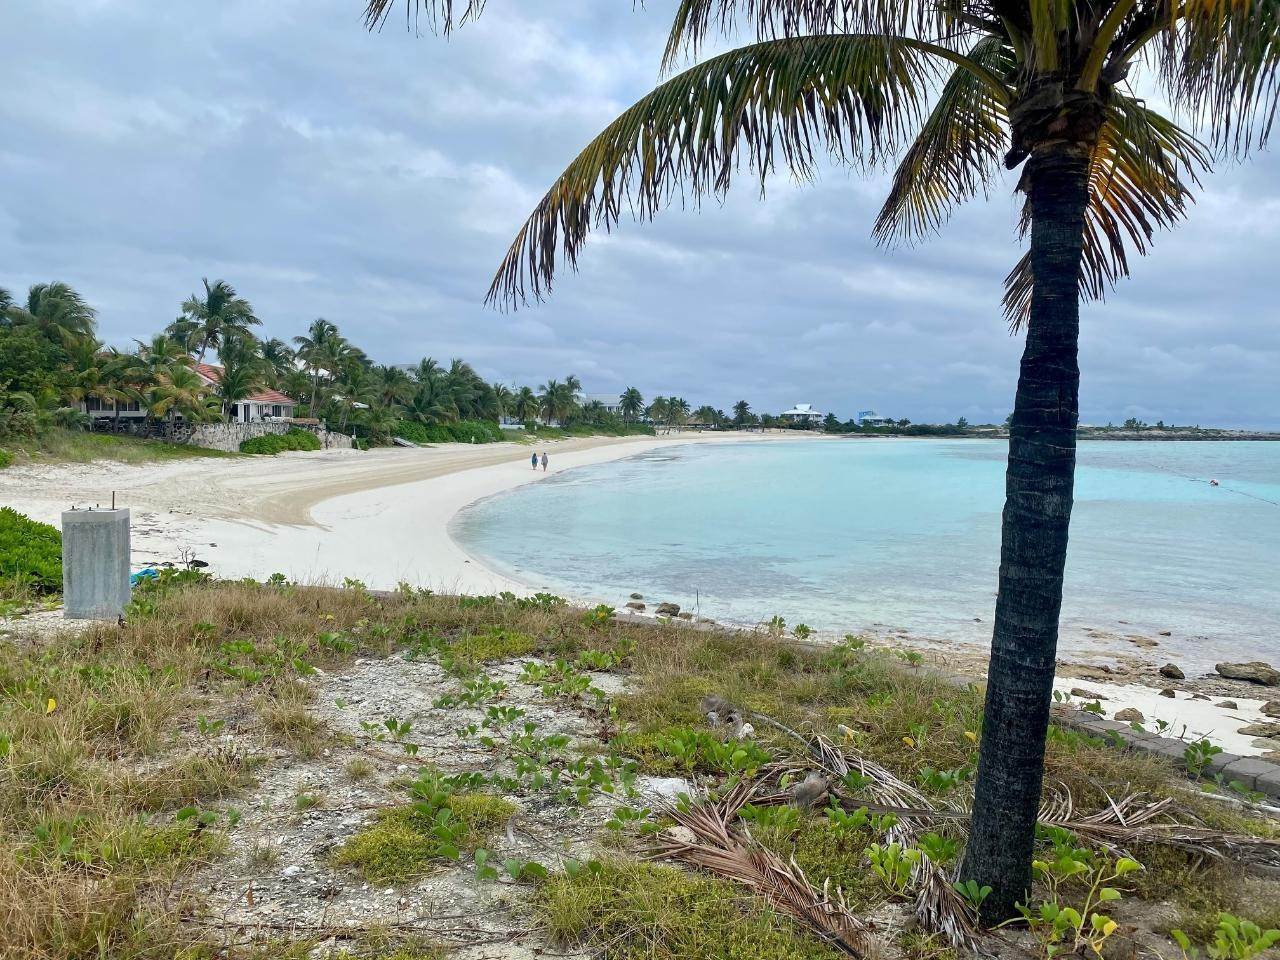 Terreno por un Venta en Chub Cay, Islas Berry Bahamas